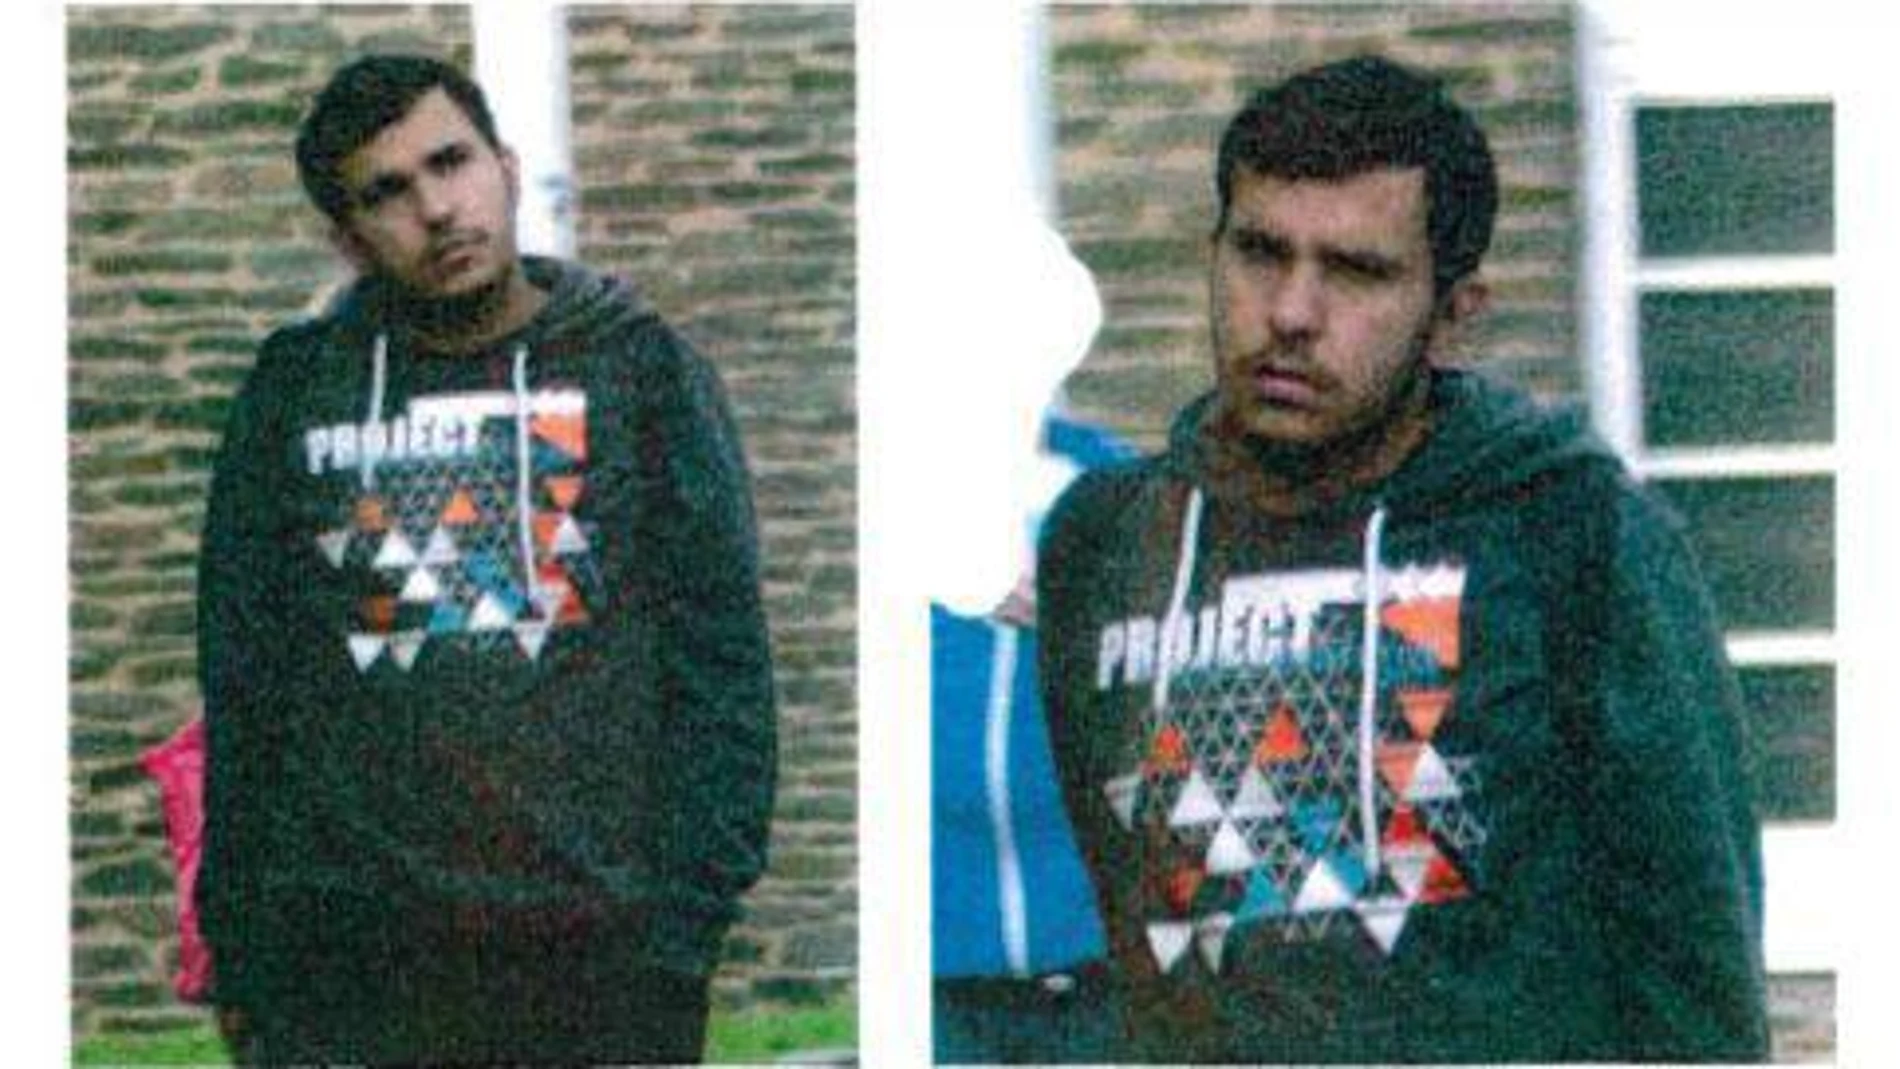 El terrorista islamista detenido en Alemania se suicida en prisión